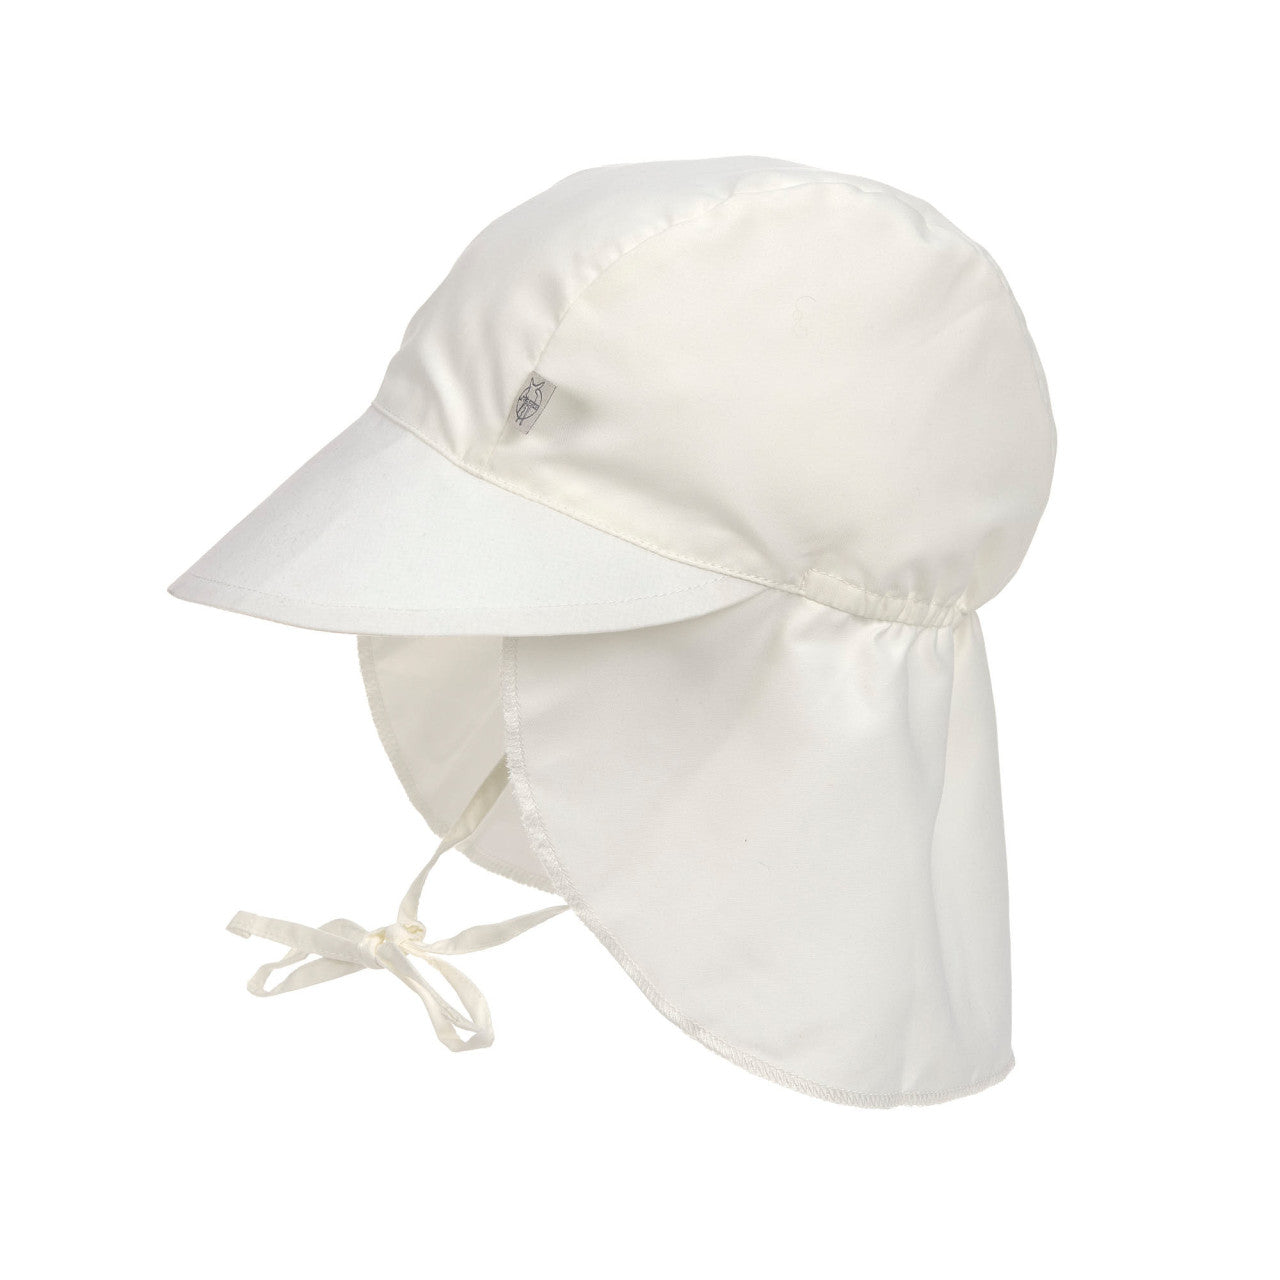 Schirmmütze Kinder (UV Schutz), Weiß